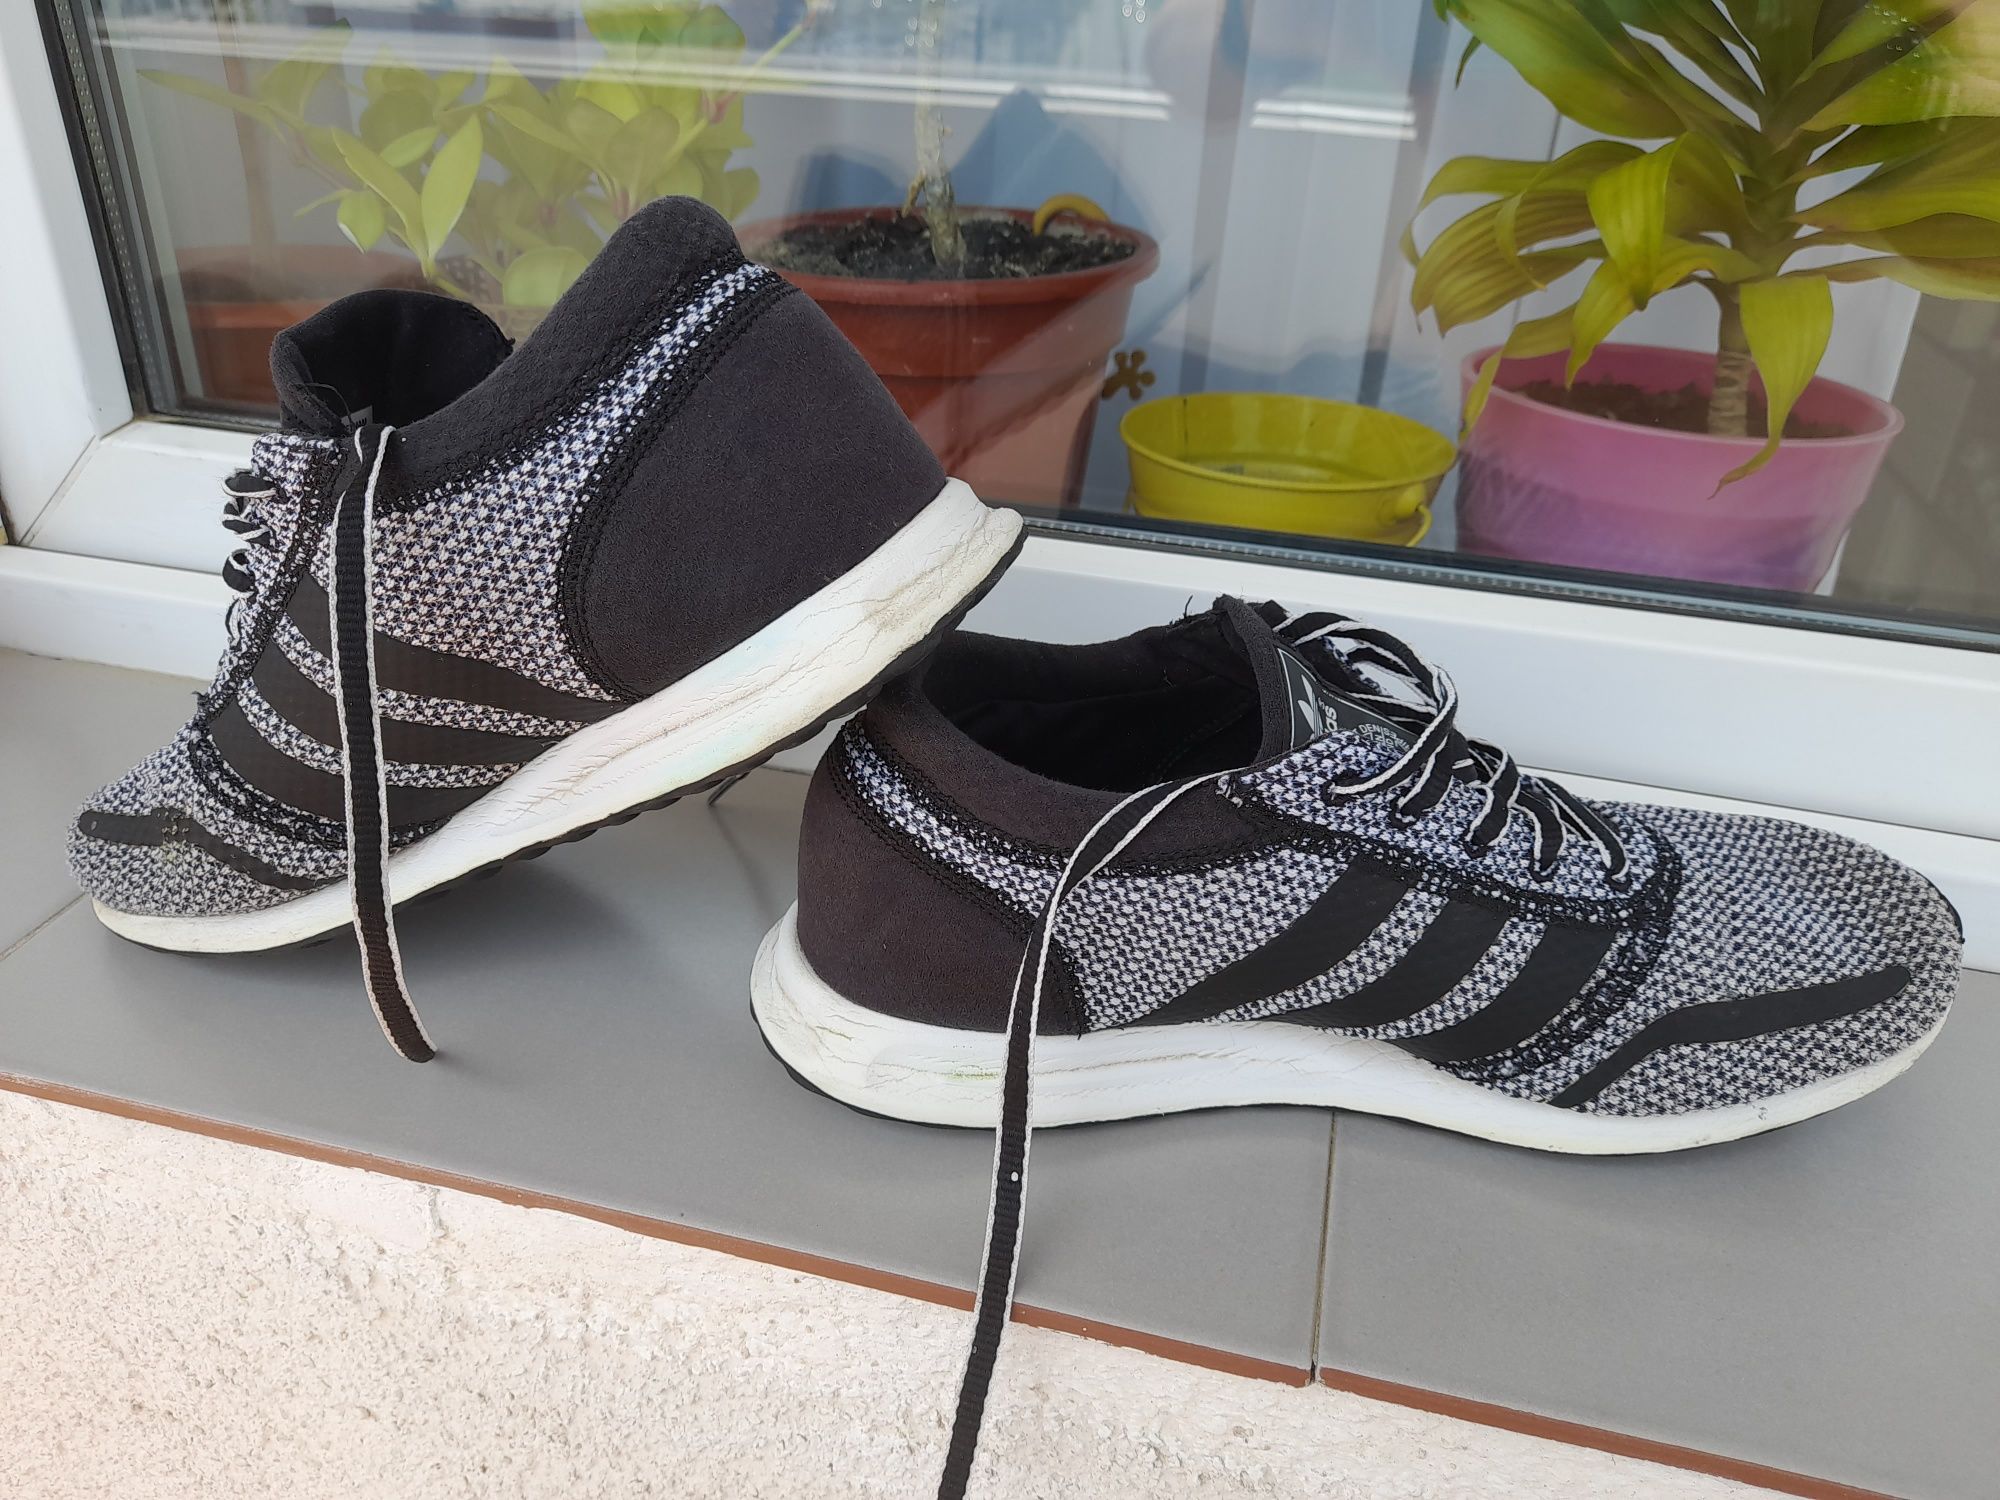 Vând pantofi sport Adidas, în stare buna, calitate, import.mar.40 1/2